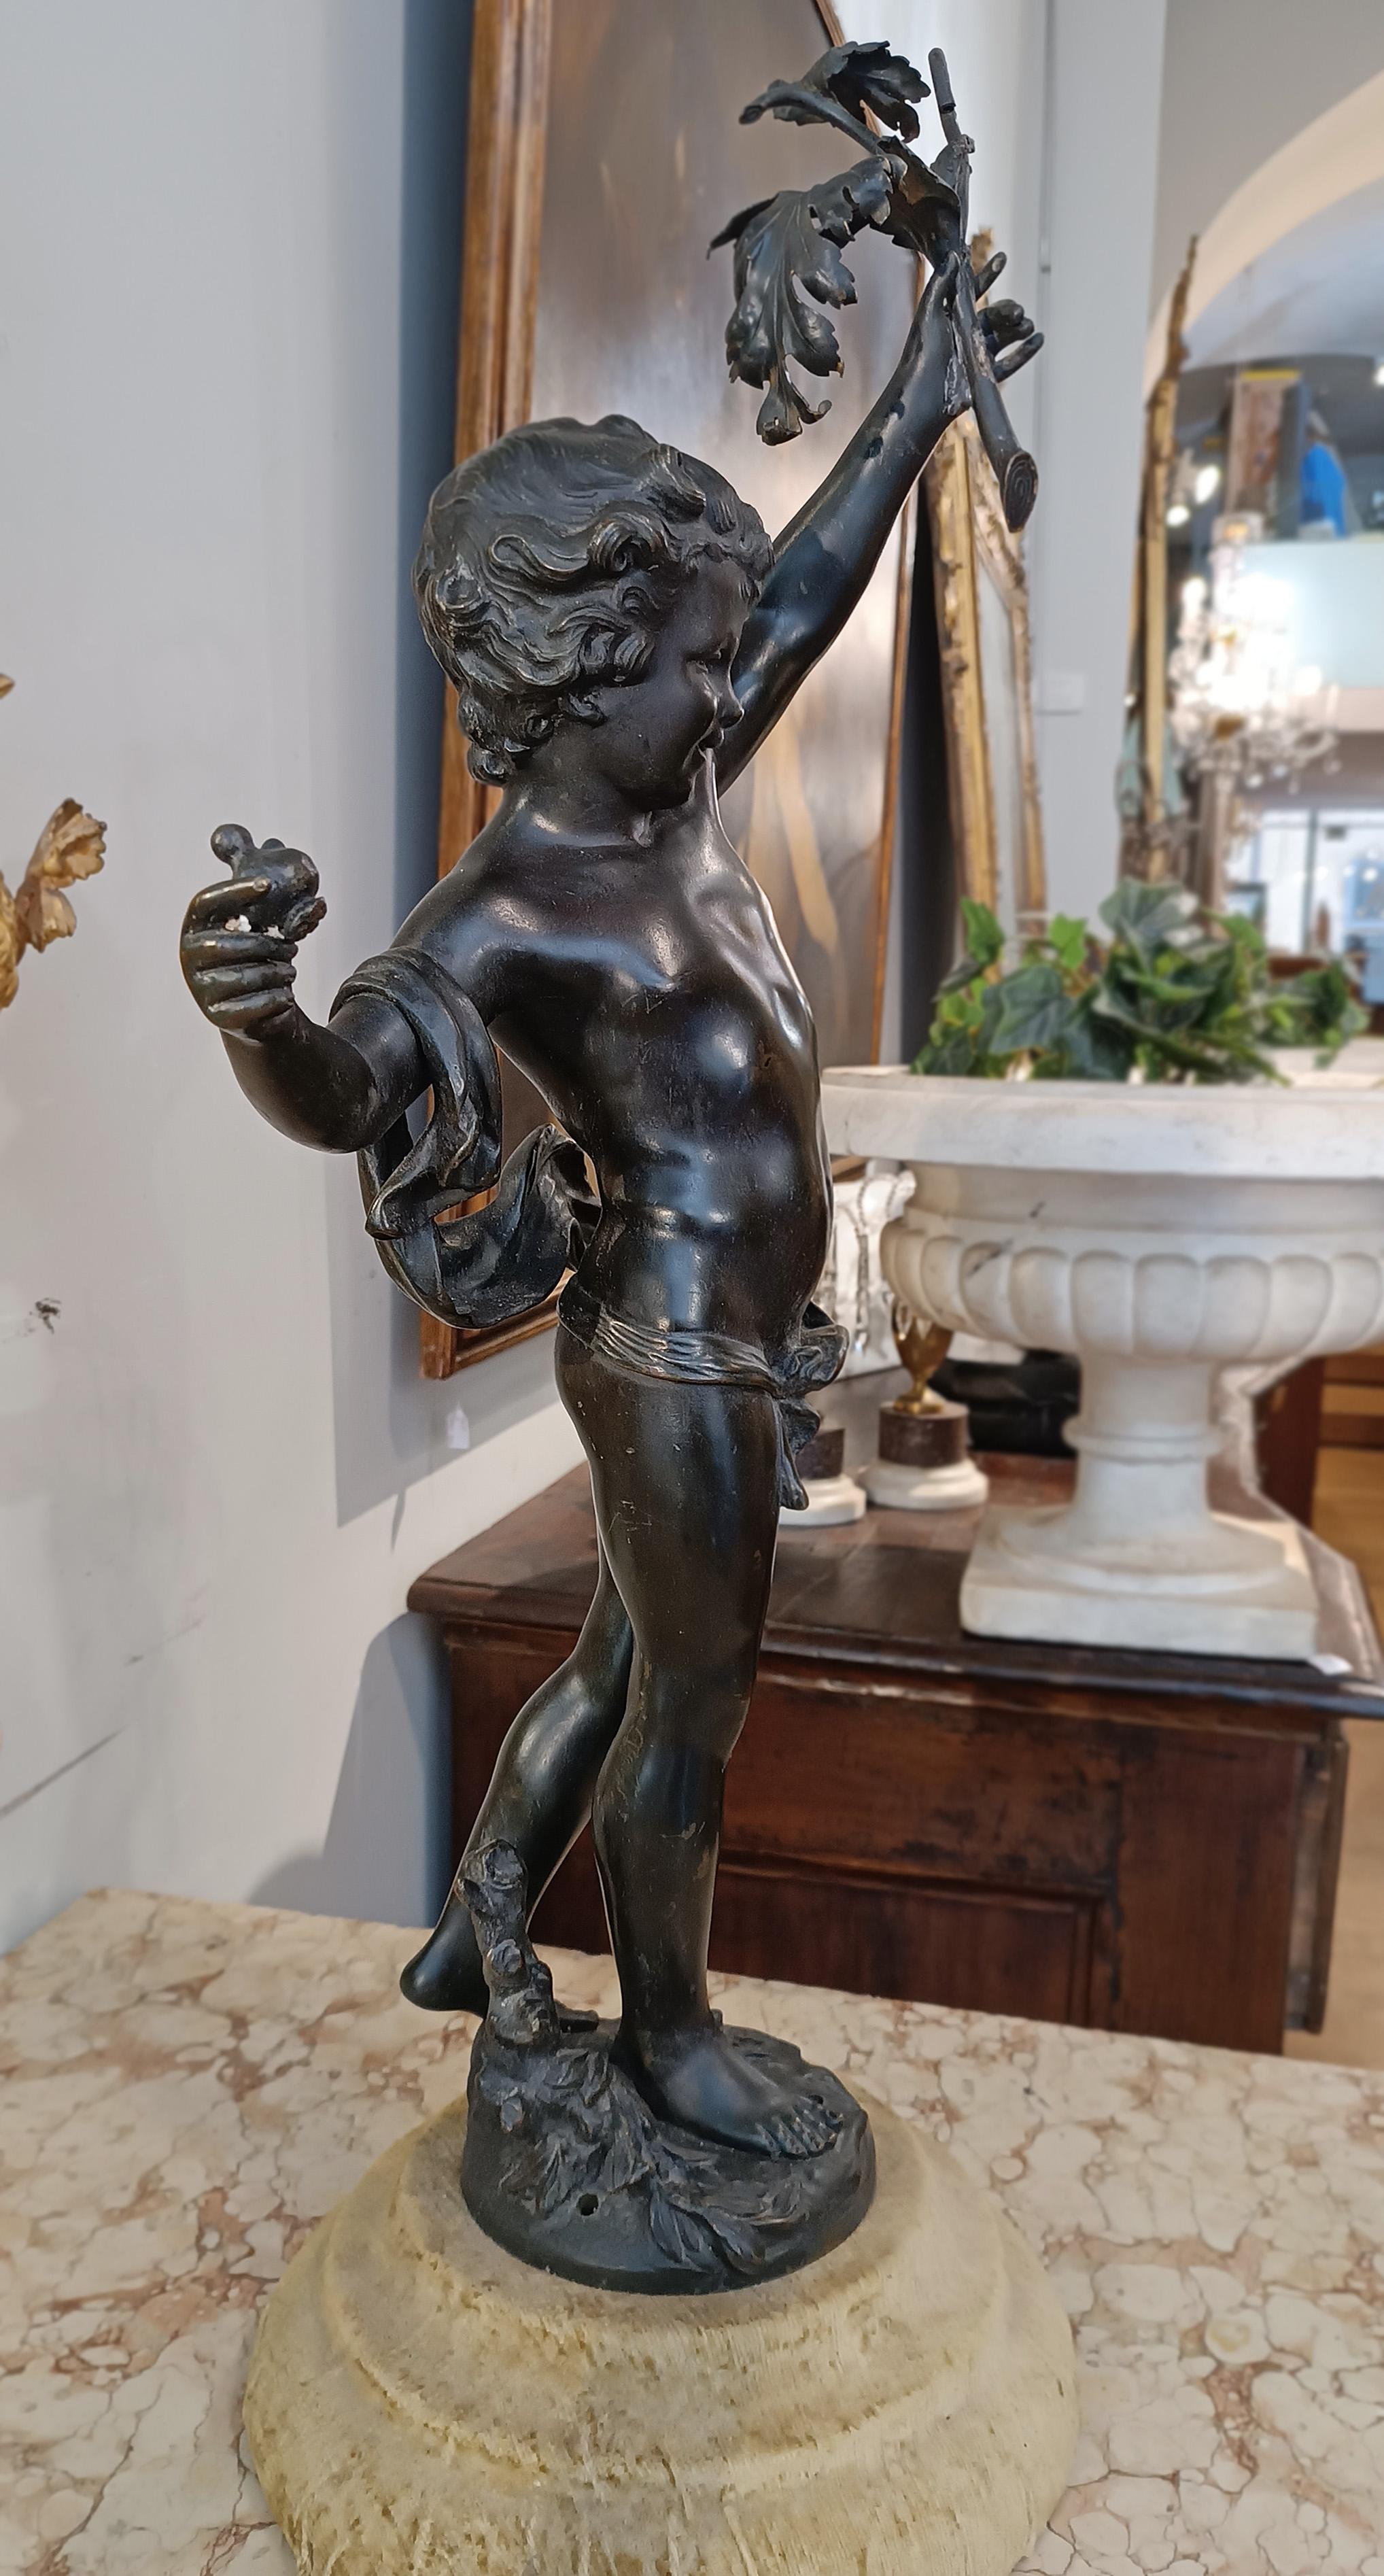 Bedeutende Skulptur aus Bronze im Wachsausschmelzverfahren mit dunkler Patina, die Dionysos als Kind darstellt. Der Gott hält seine charakteristischen Attribute in den Händen: einen Lorbeerzweig in der linken Hand, Symbol des Sieges und des Ruhmes,